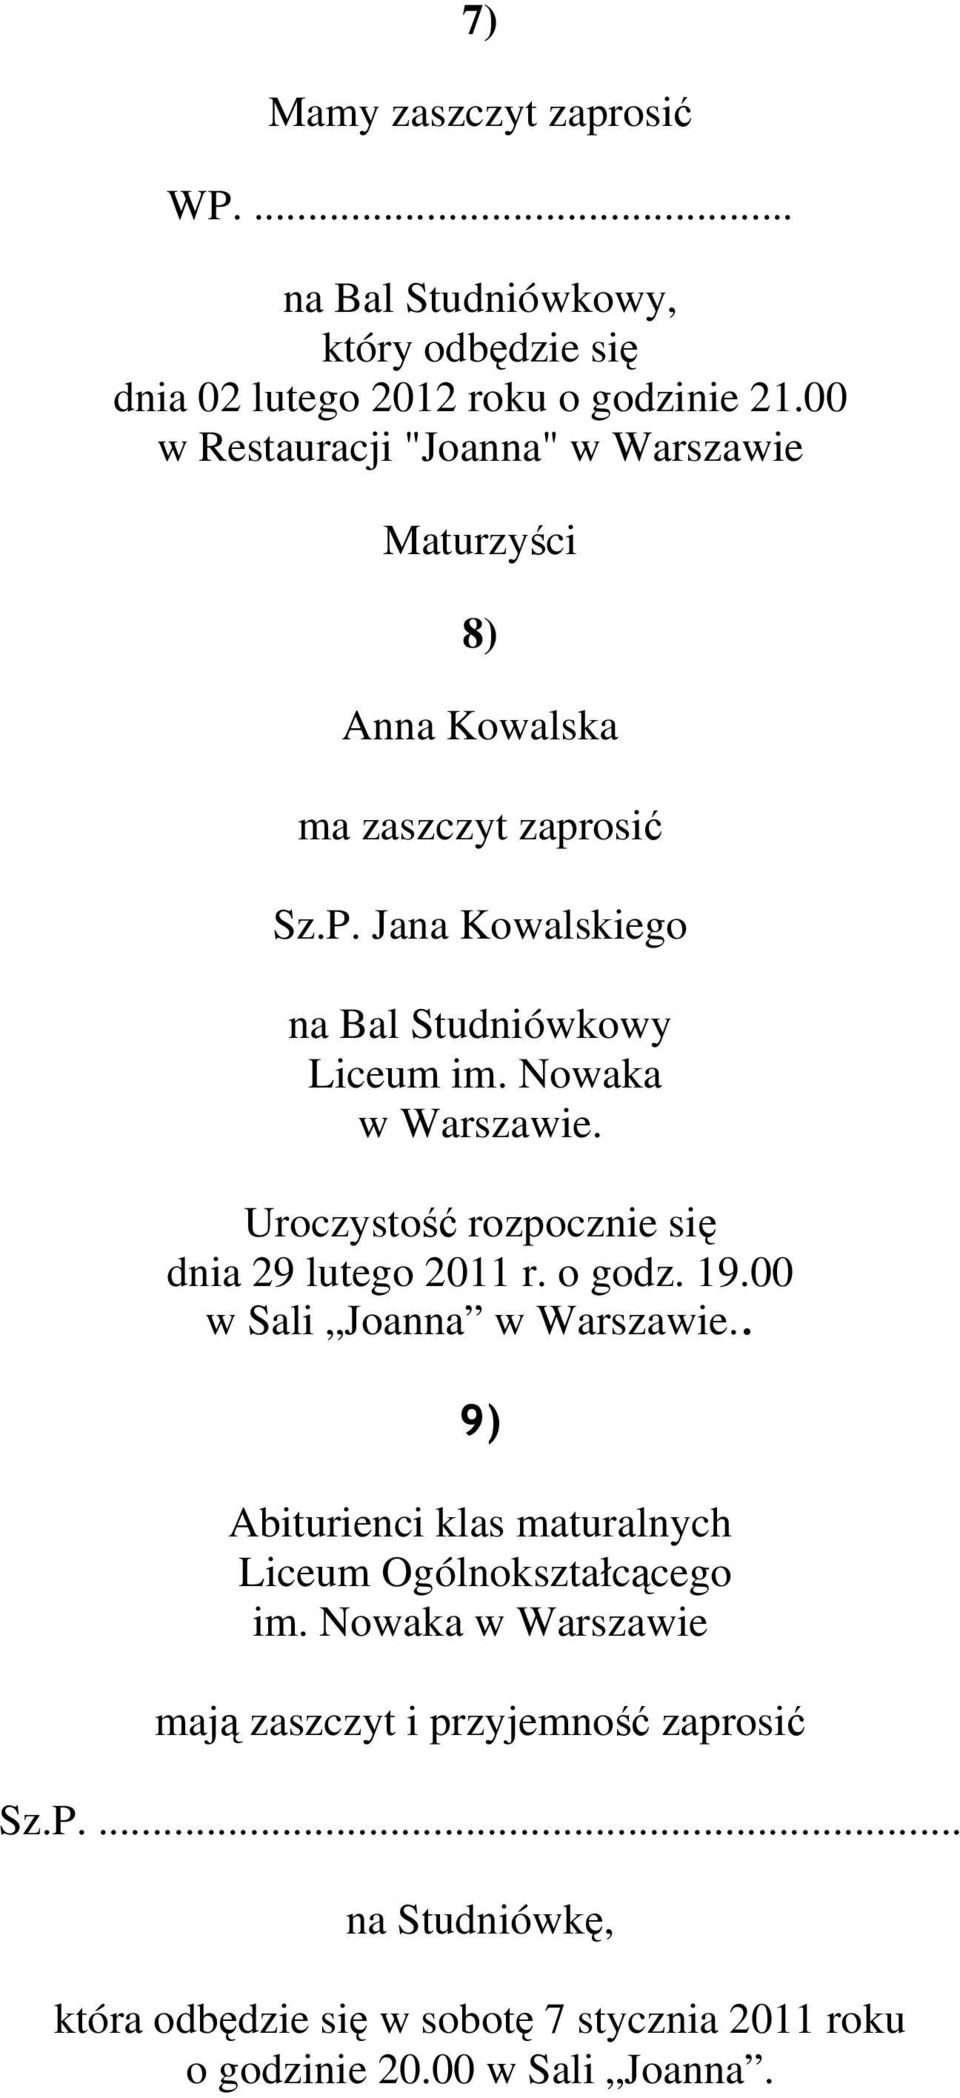 Nowaka w Warszawie. Uroczystość rozpocznie się dnia 29 lutego 2011 r. o godz. 19.00 w Sali Joanna w Warszawie.